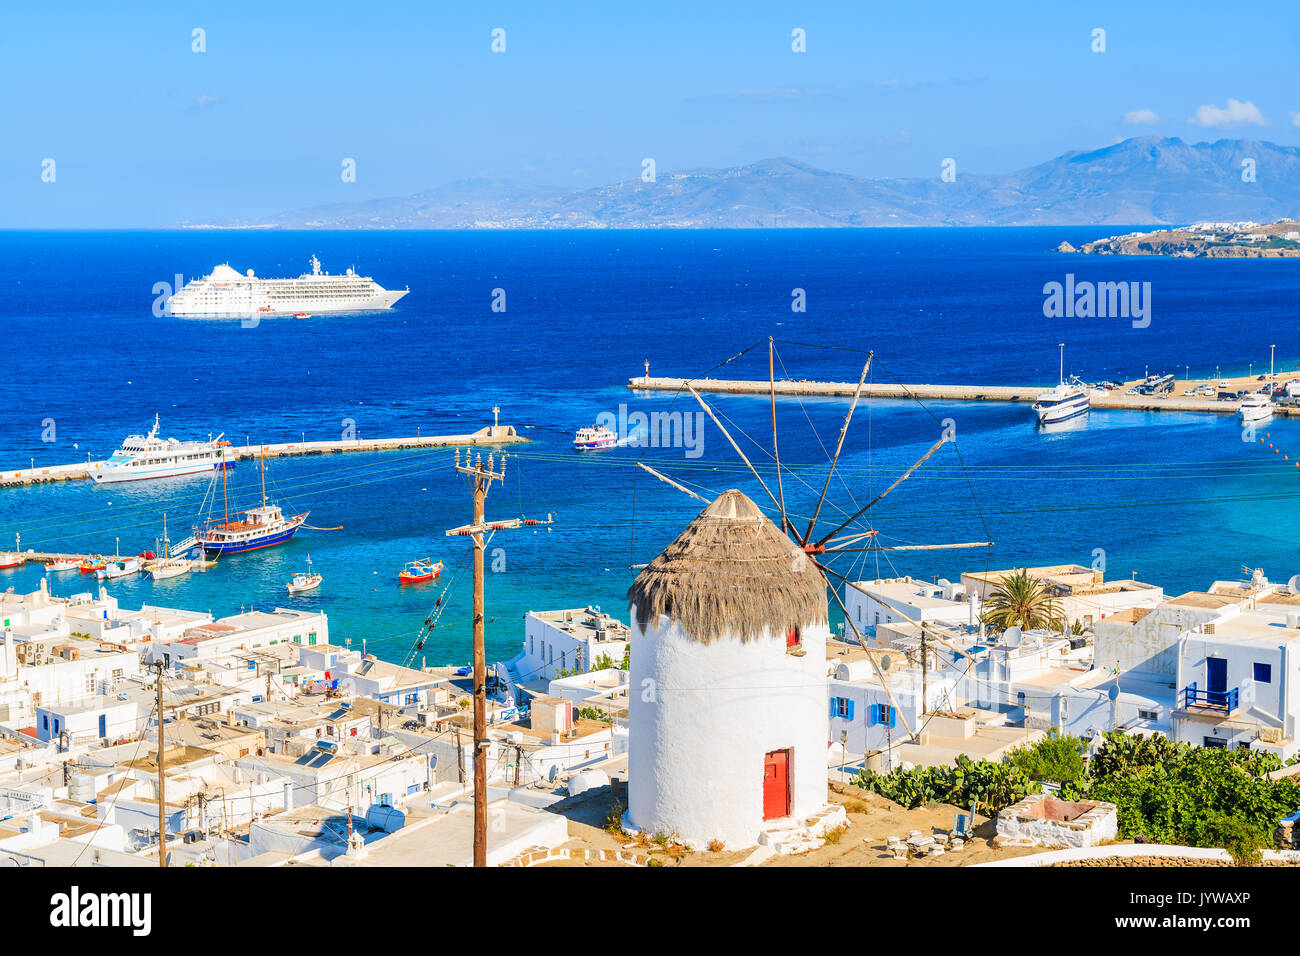 Célèbre moulin rouge blanc avec porte donnant sur le port de Mykonos, l'île de Mykonos, Grèce Banque D'Images